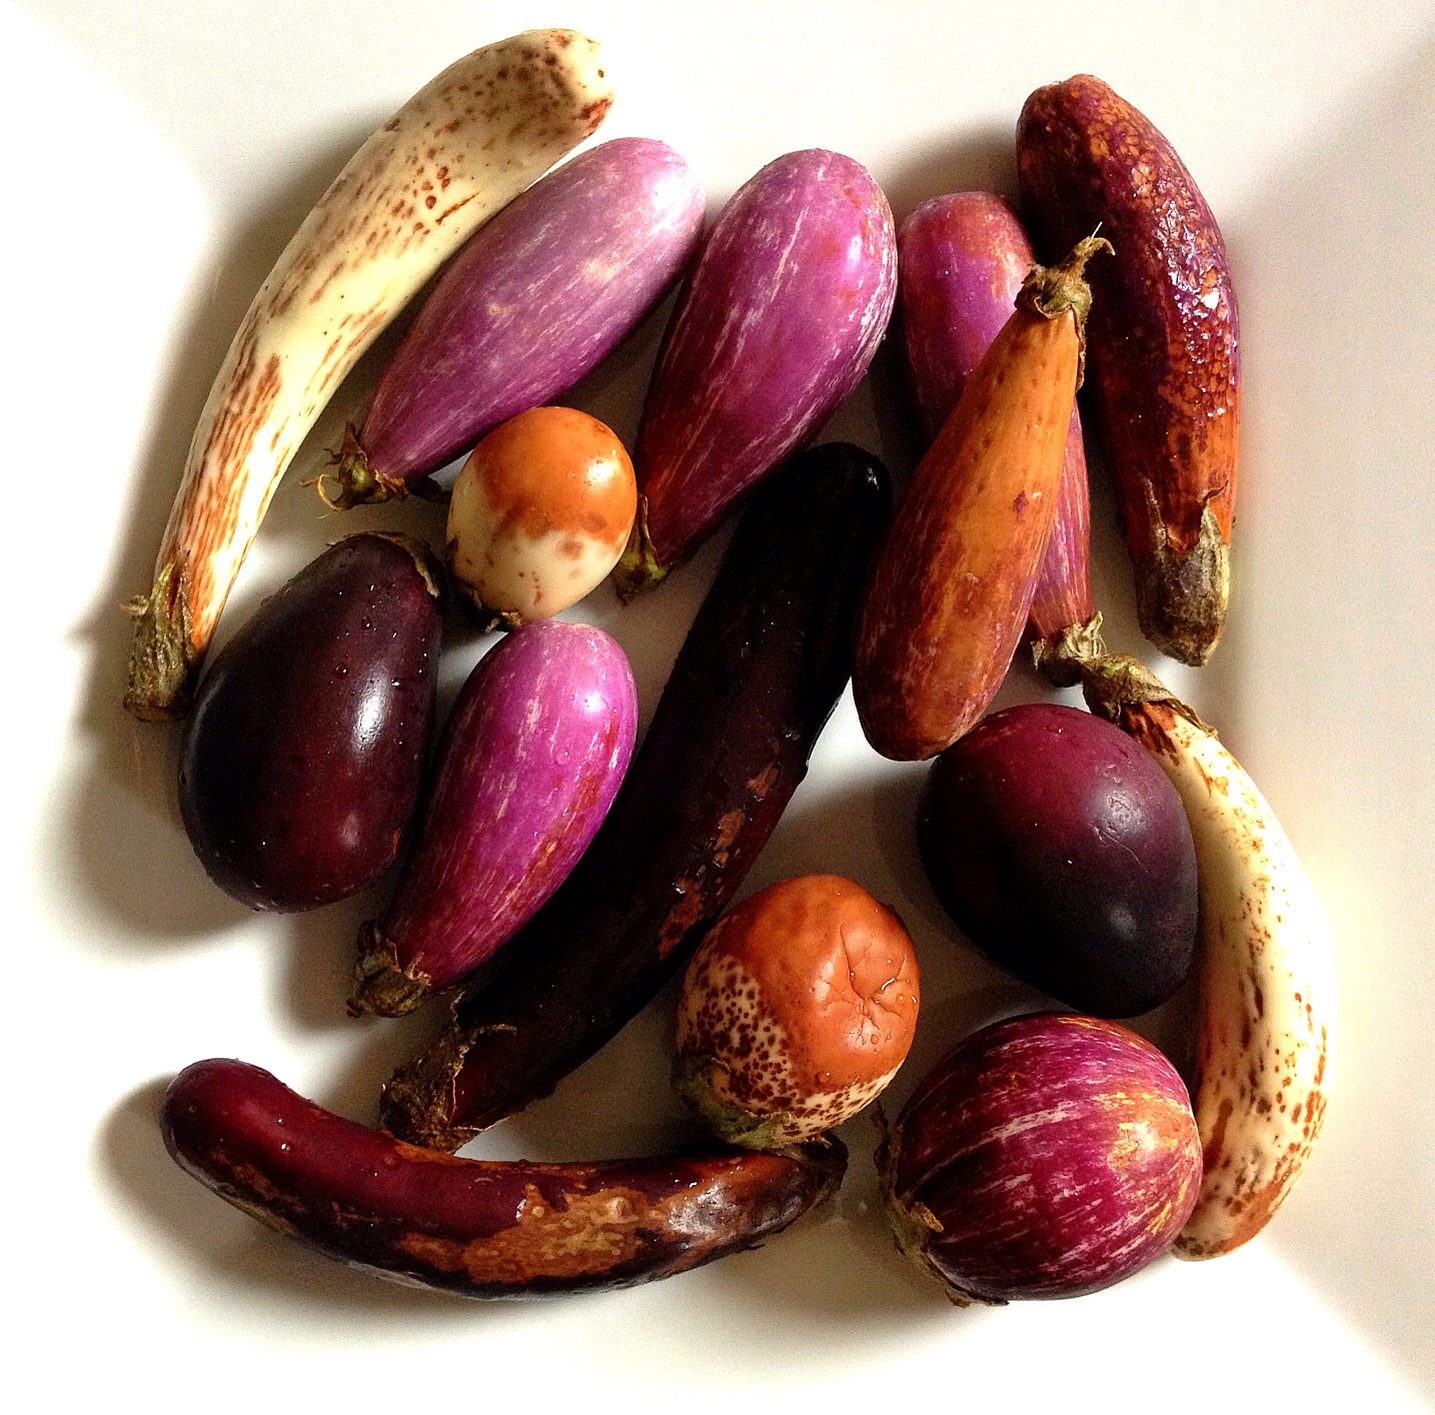 Mixed baby eggplants